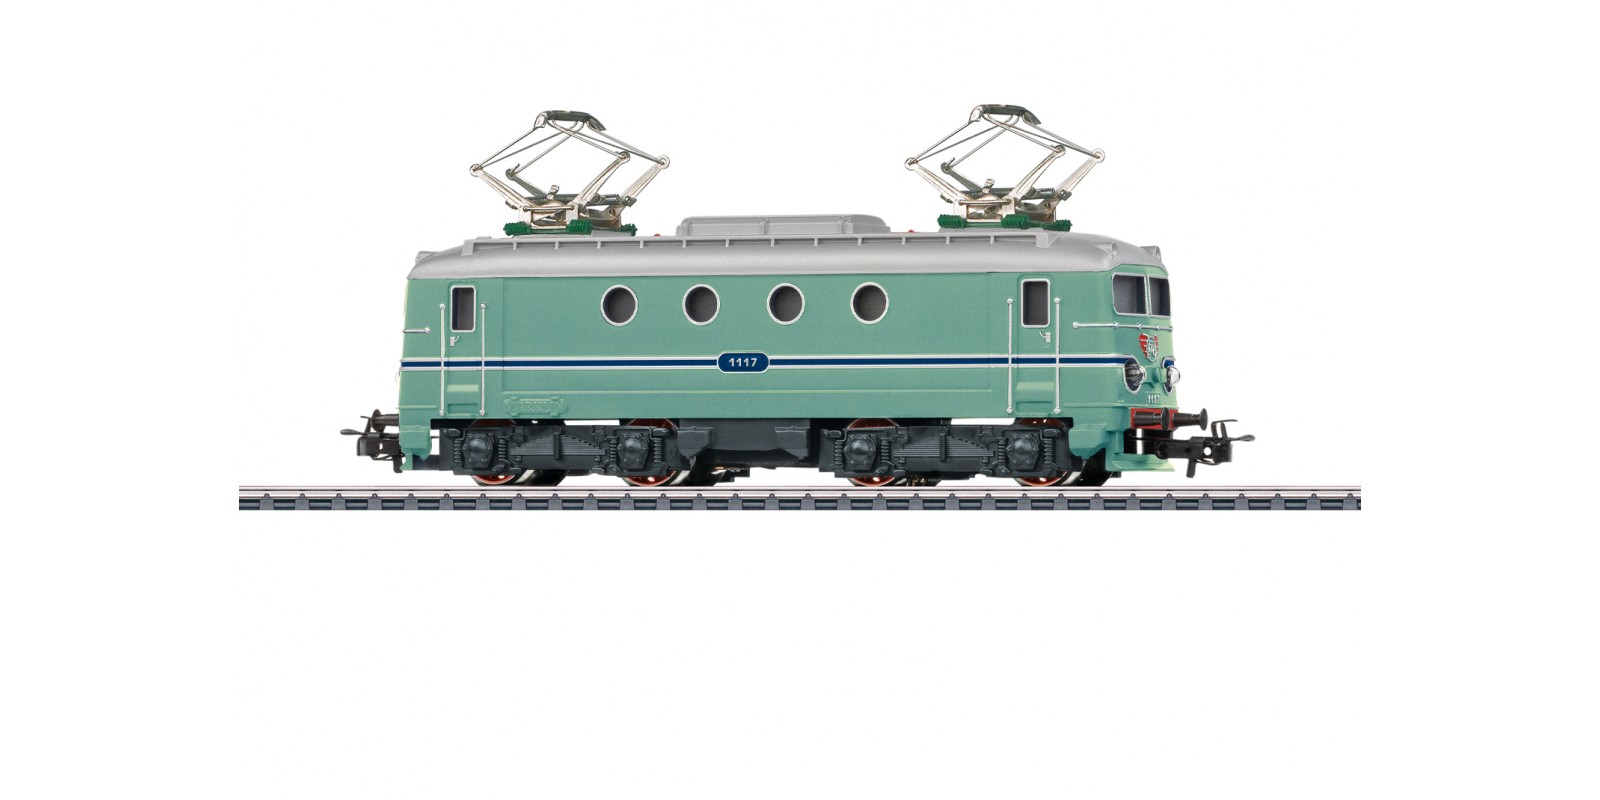 30131 Class 1100 Electric Locomotive